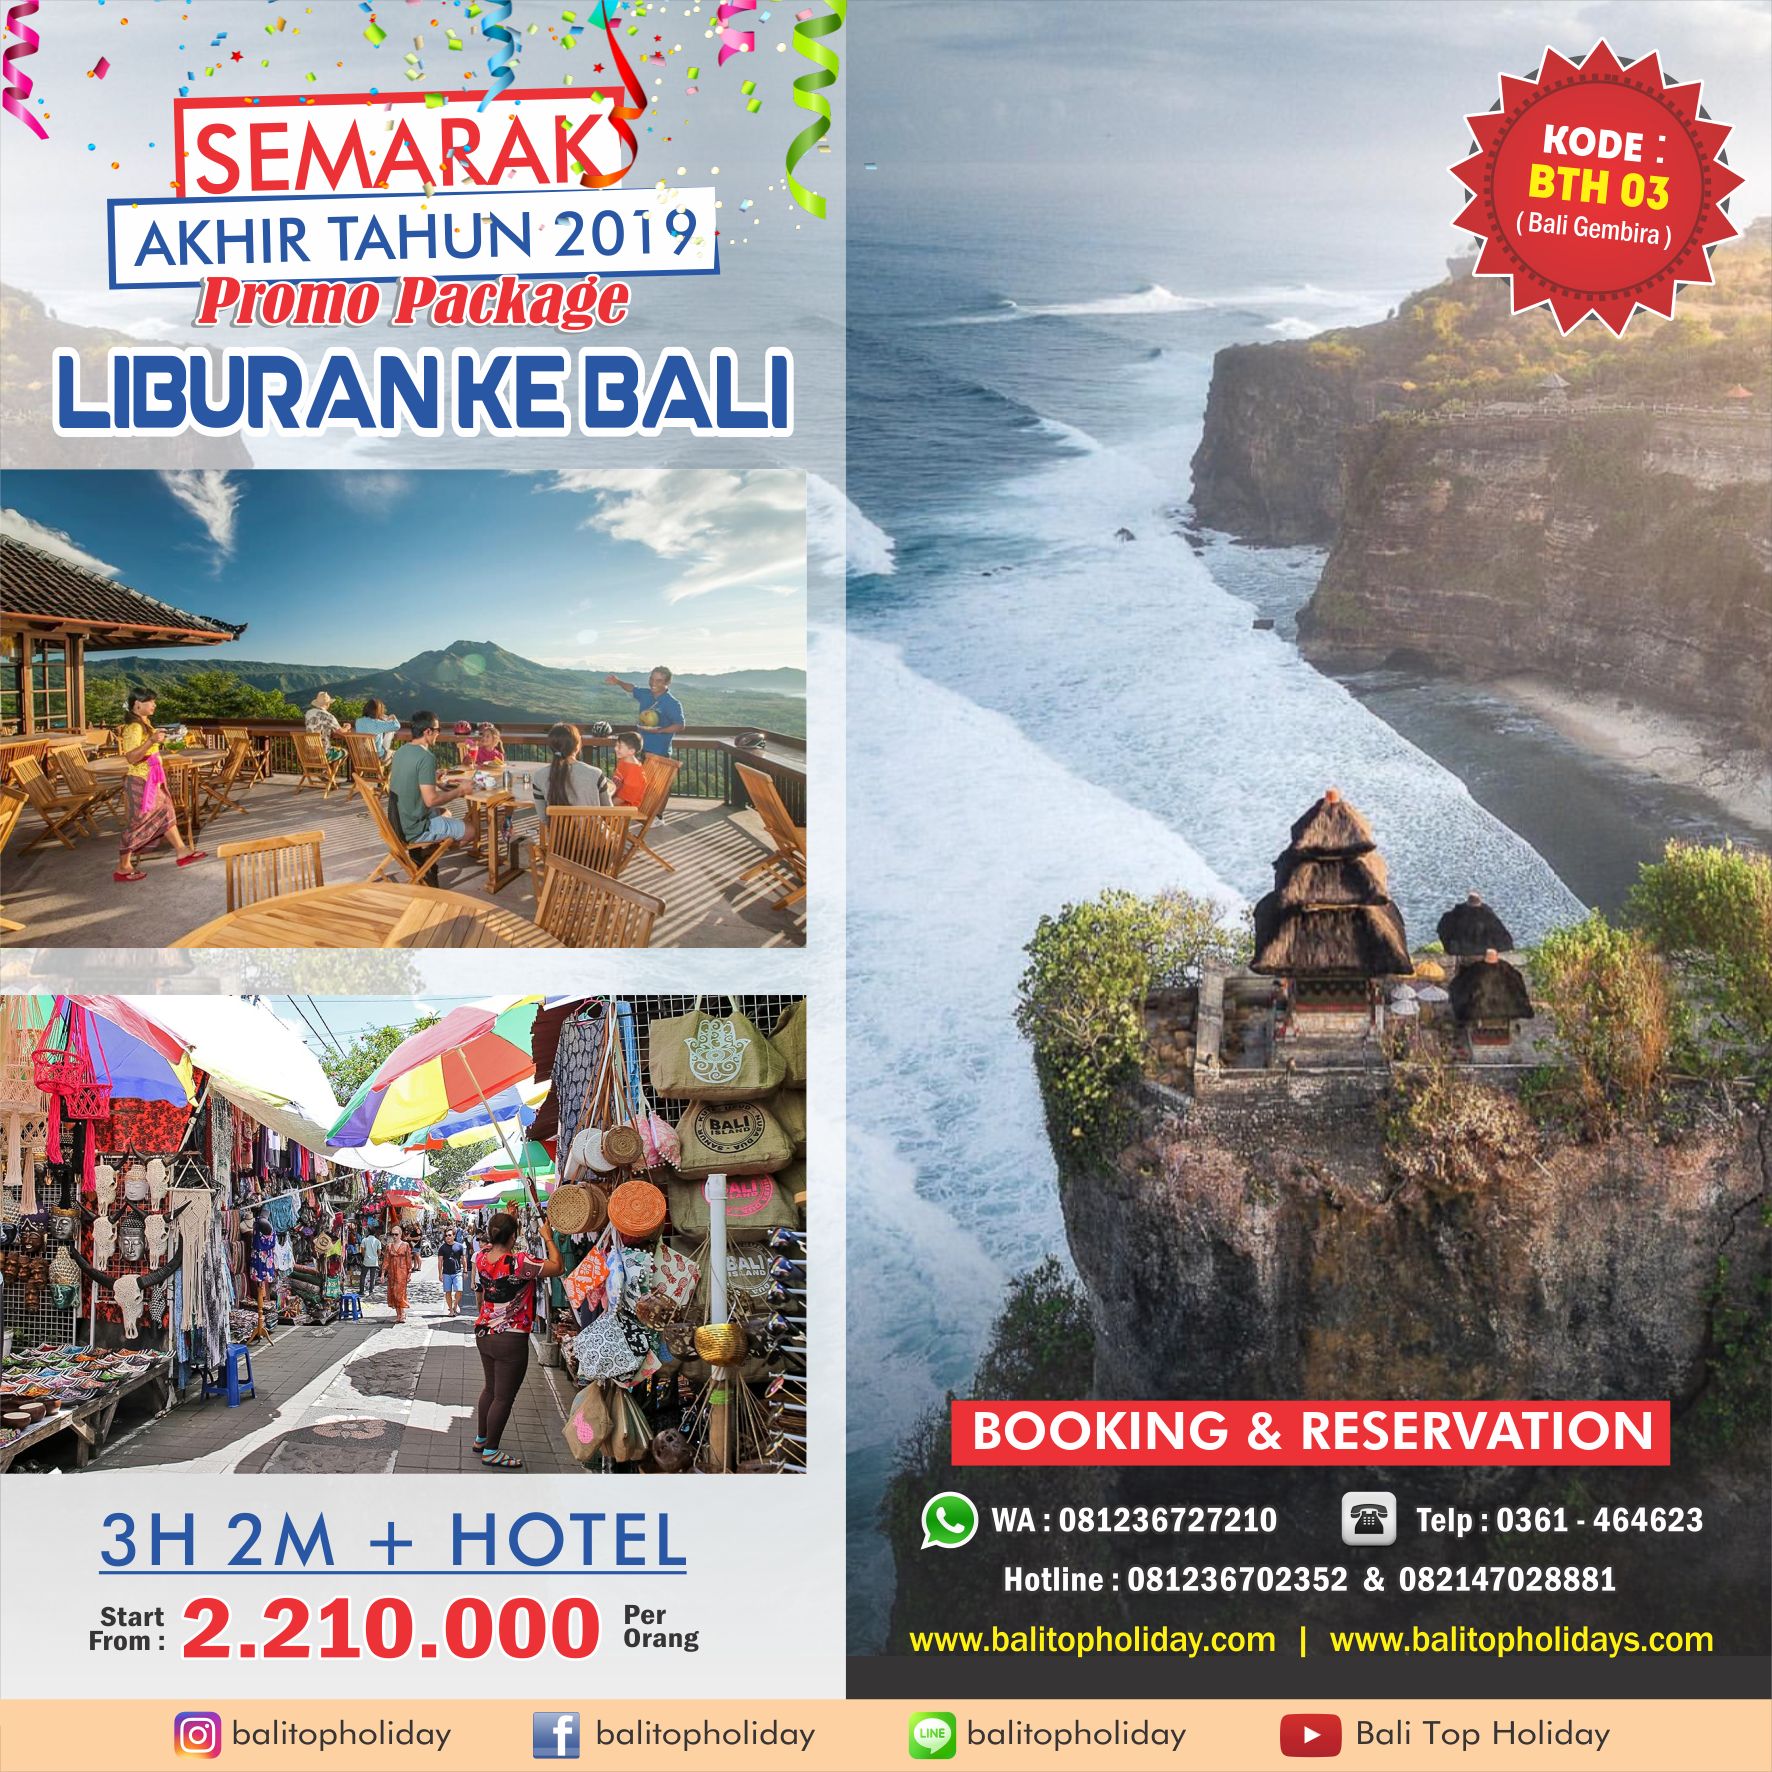 Paket Tour Bali 3H 2M Hotel BTH 03 Akhir tahun 2019